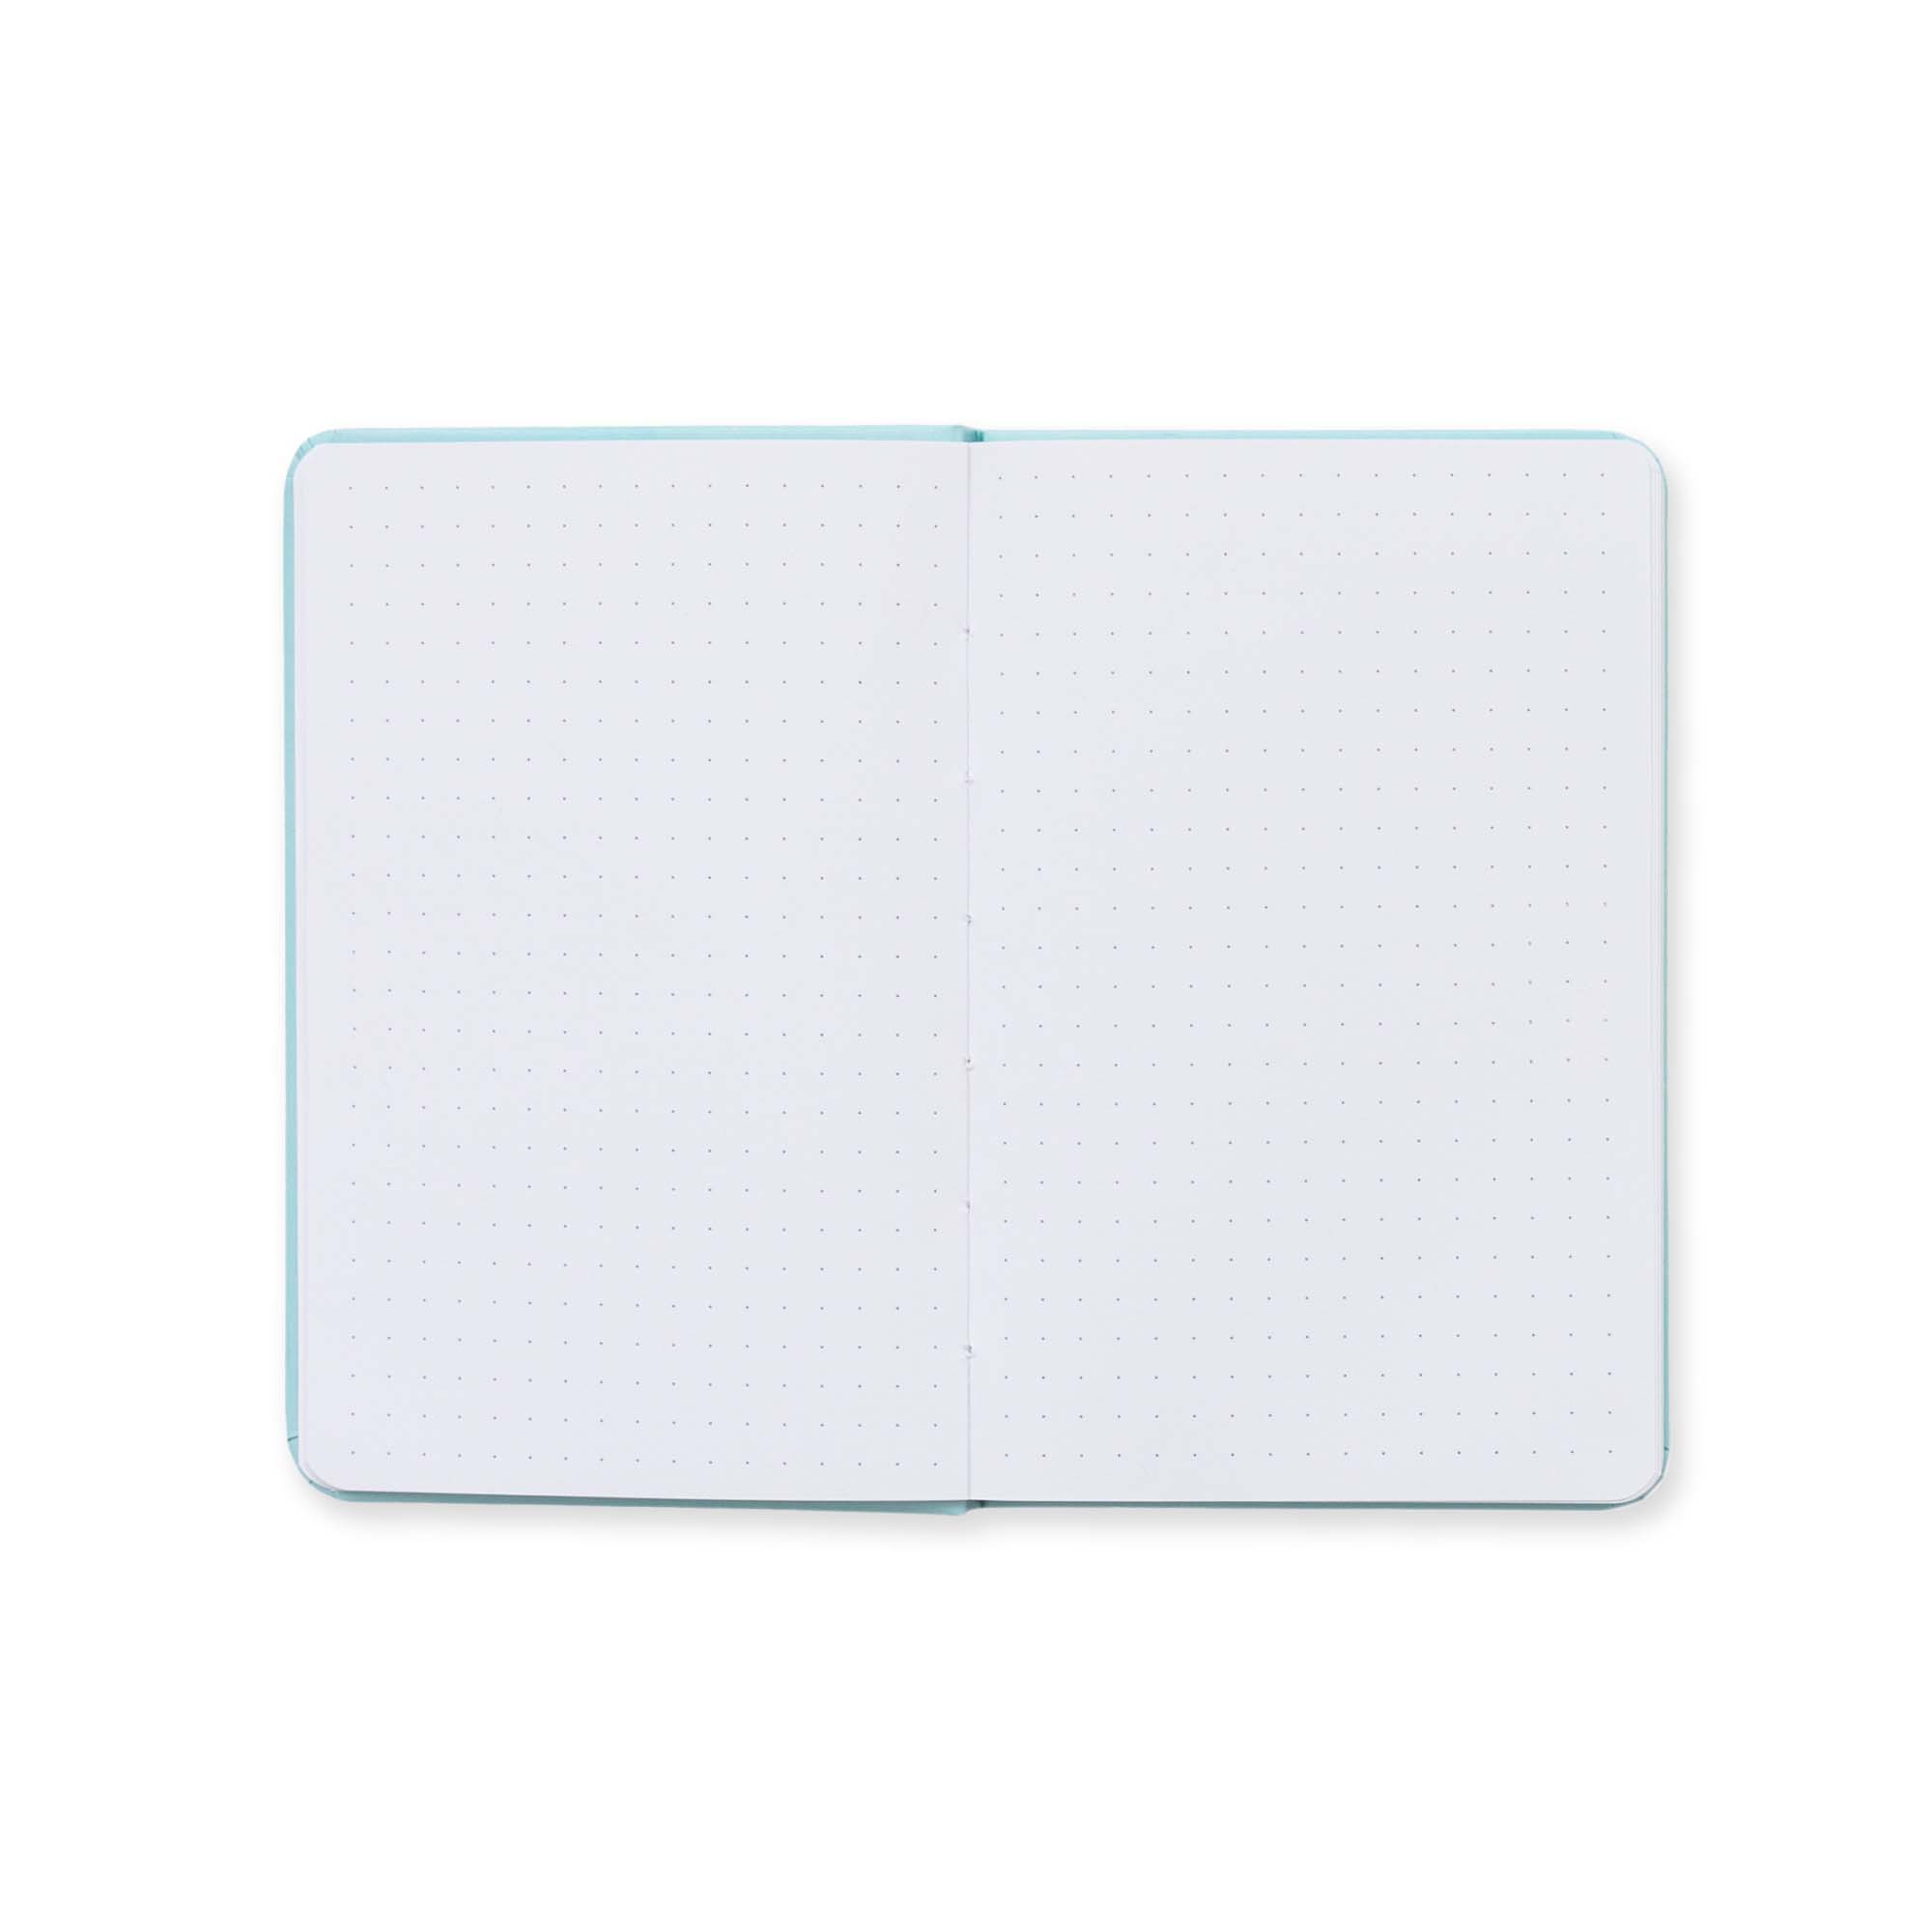 Conjunto de caderno + caneta - Apontamentos, ideias e notas de superprofes